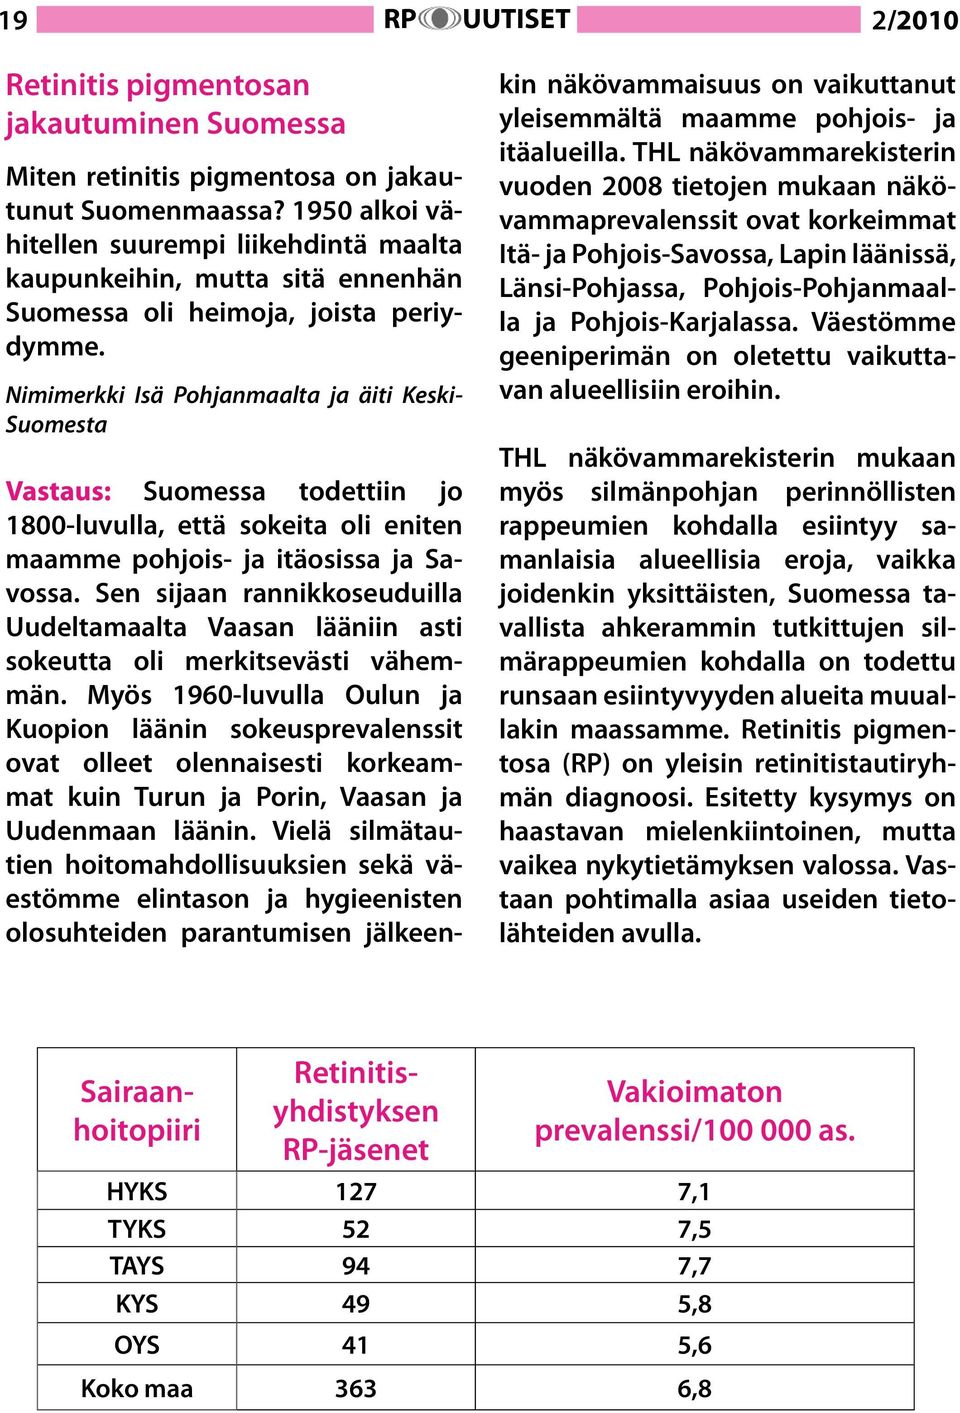 Nimimerkki Isä Pohjanmaalta ja äiti Keski- Suomesta Vastaus: Suomessa todettiin jo 1800-luvulla, että sokeita oli eniten maamme pohjois- ja itäosissa ja Savossa.